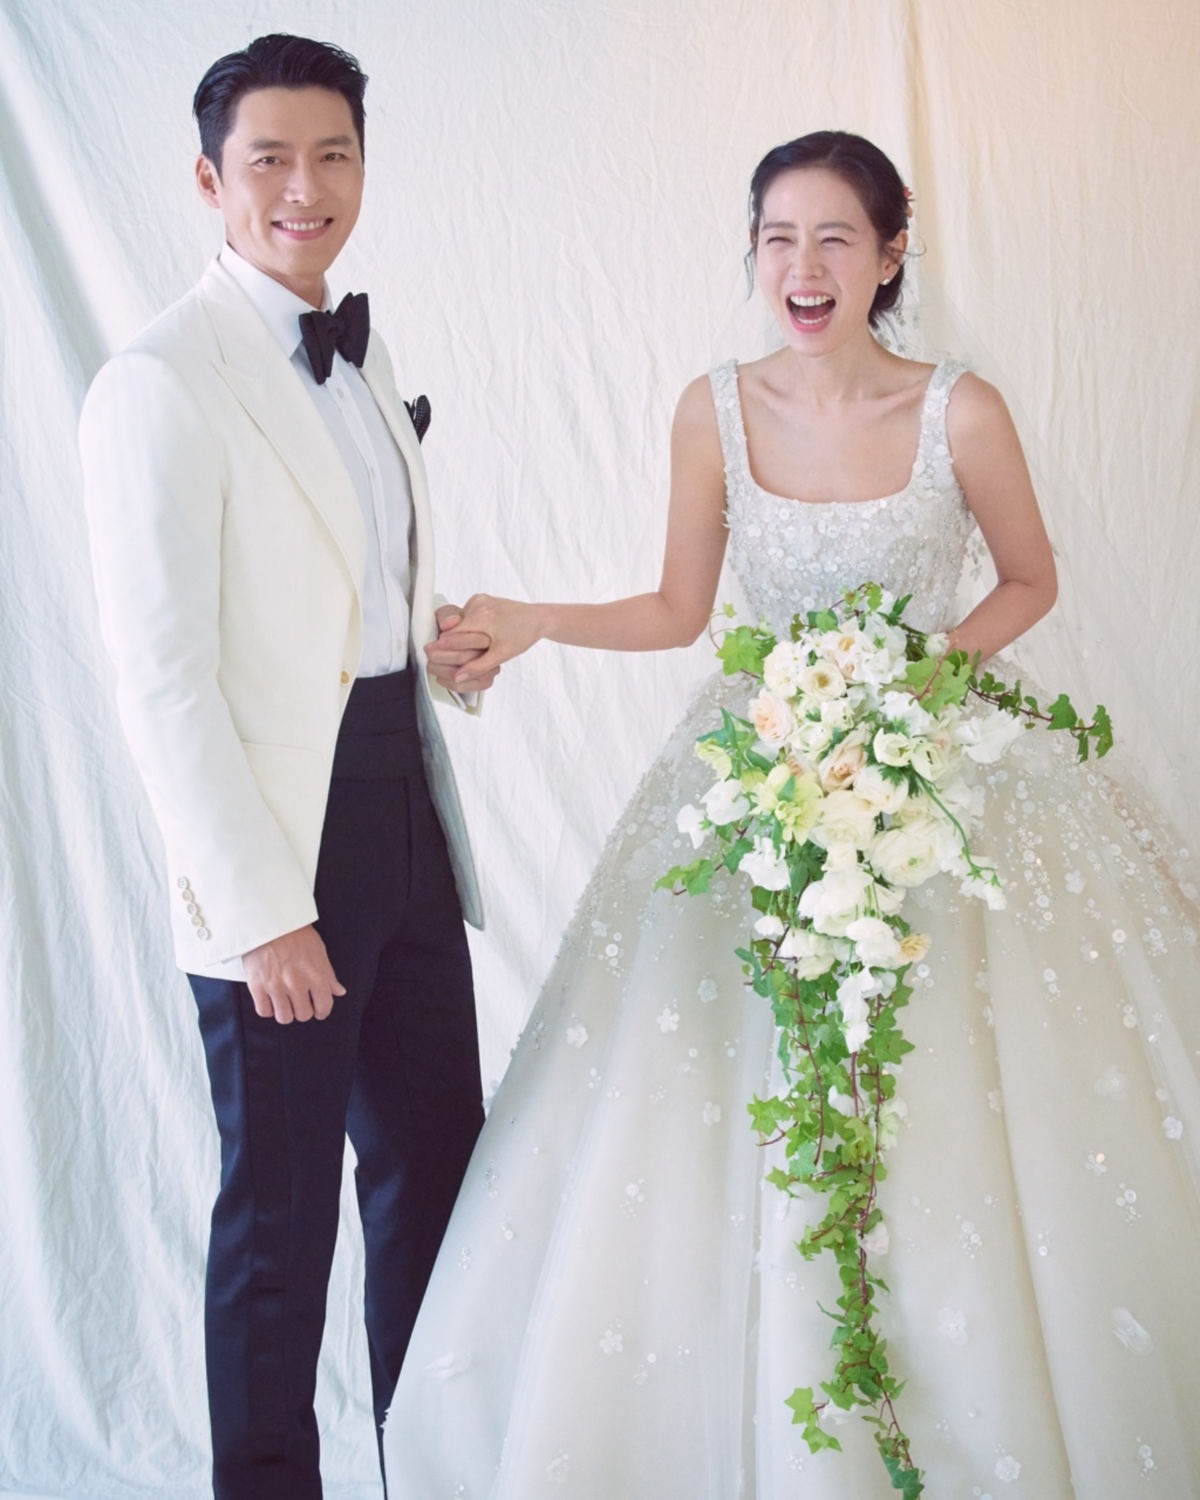 Phía sau cuộc sống hôn nhân của vợ chồng siêu sao Hyun Bin và Son Ye Jin: Hạnh phúc hóa ra lại là những gì bình dị nhất! - Ảnh 1.